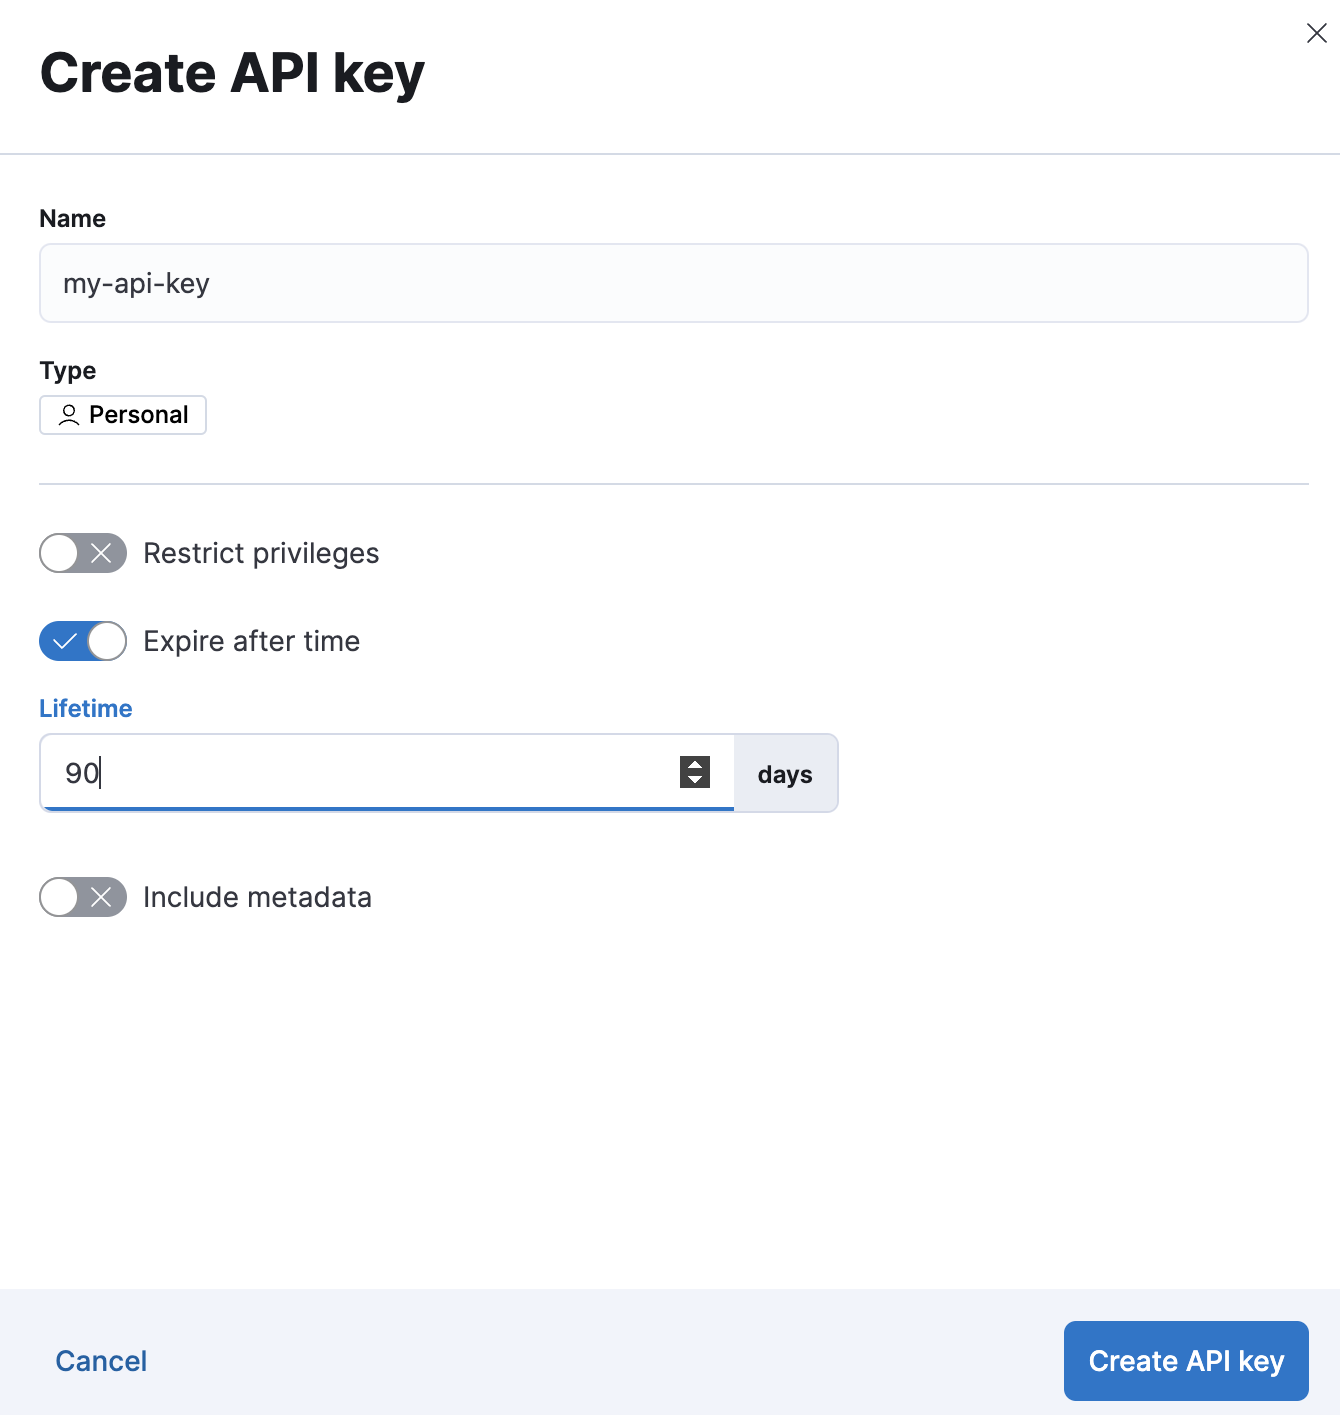 "Create API key UI"